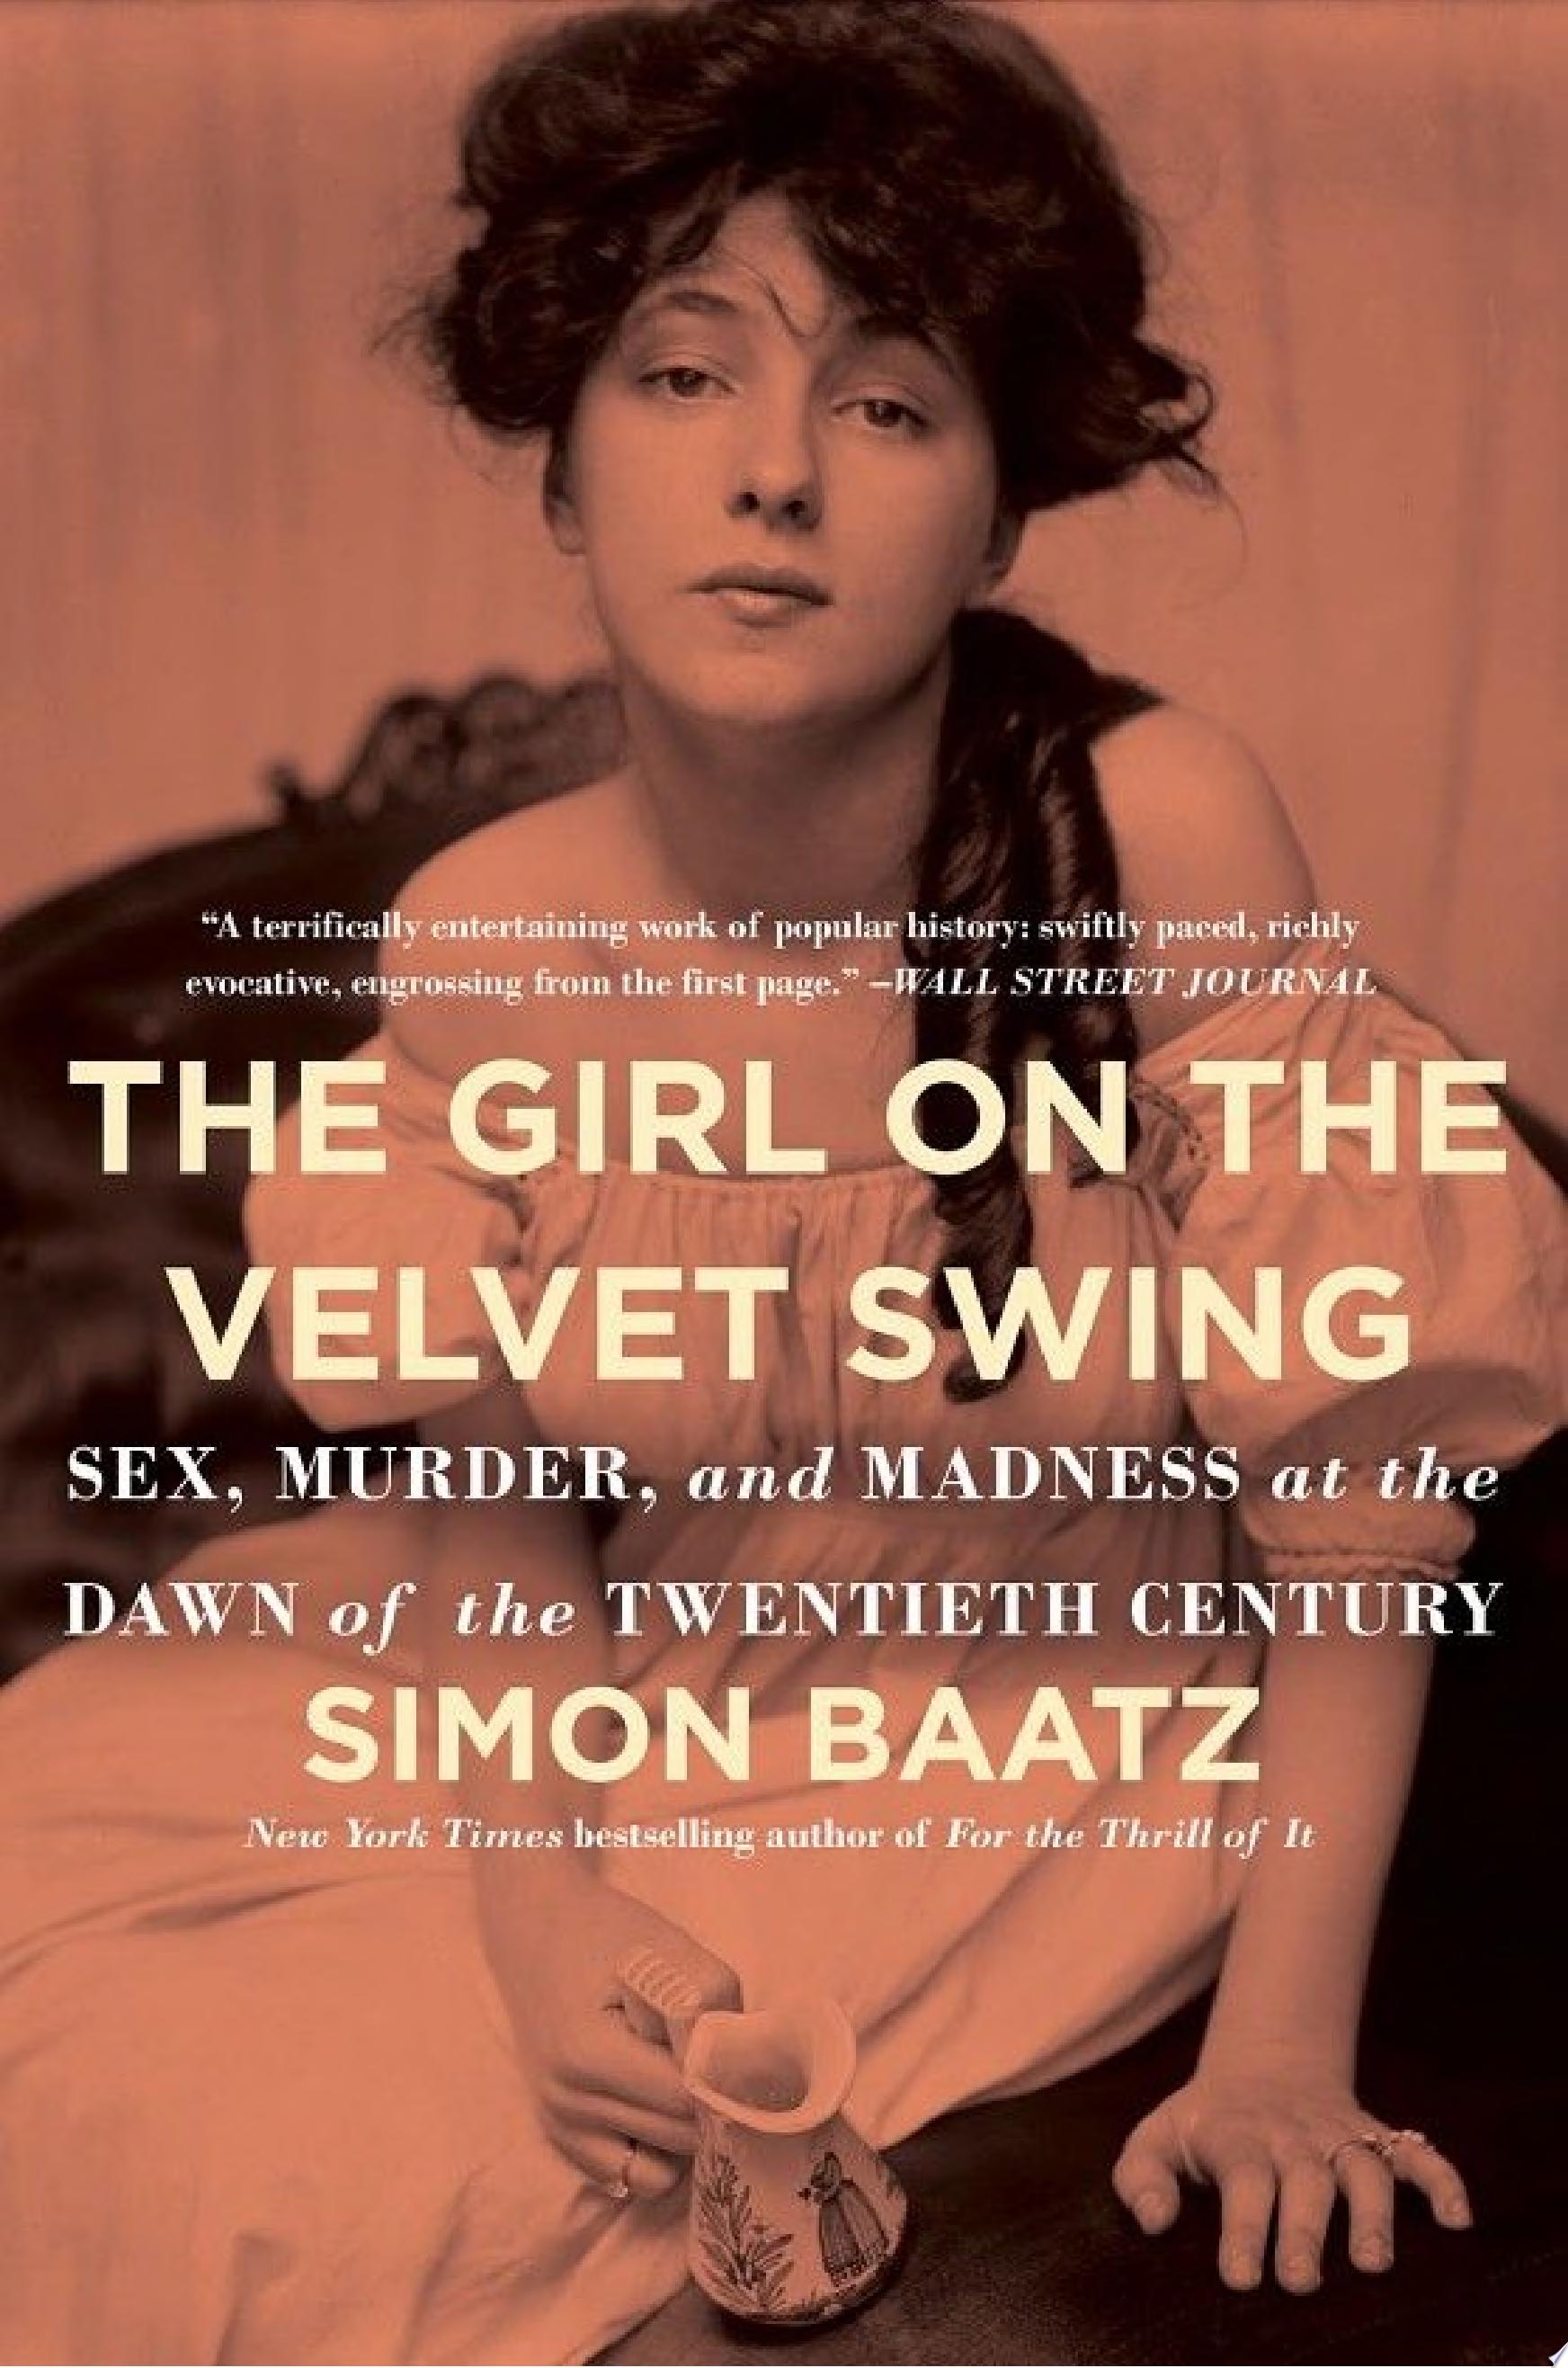 Image for "The Girl on the Velvet Swing"